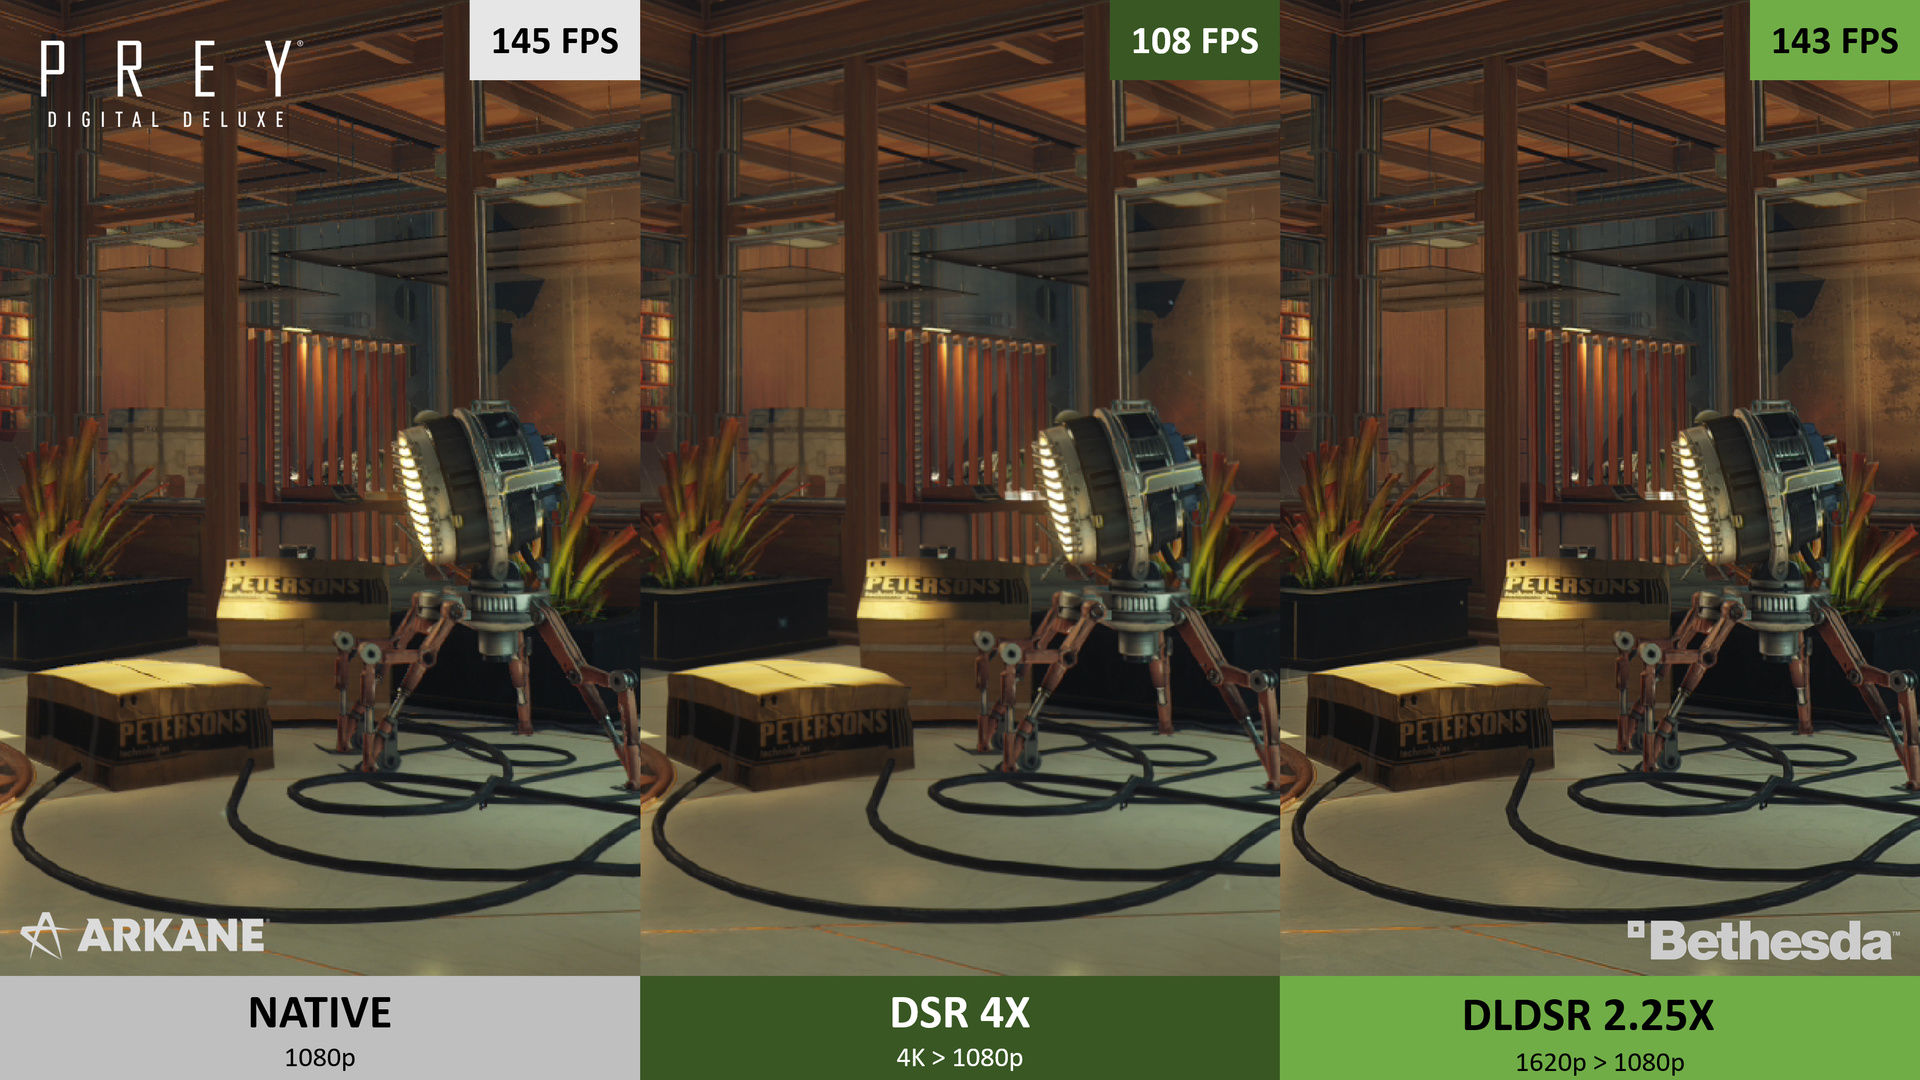 DSR y Nvidia DLDSR en comparación